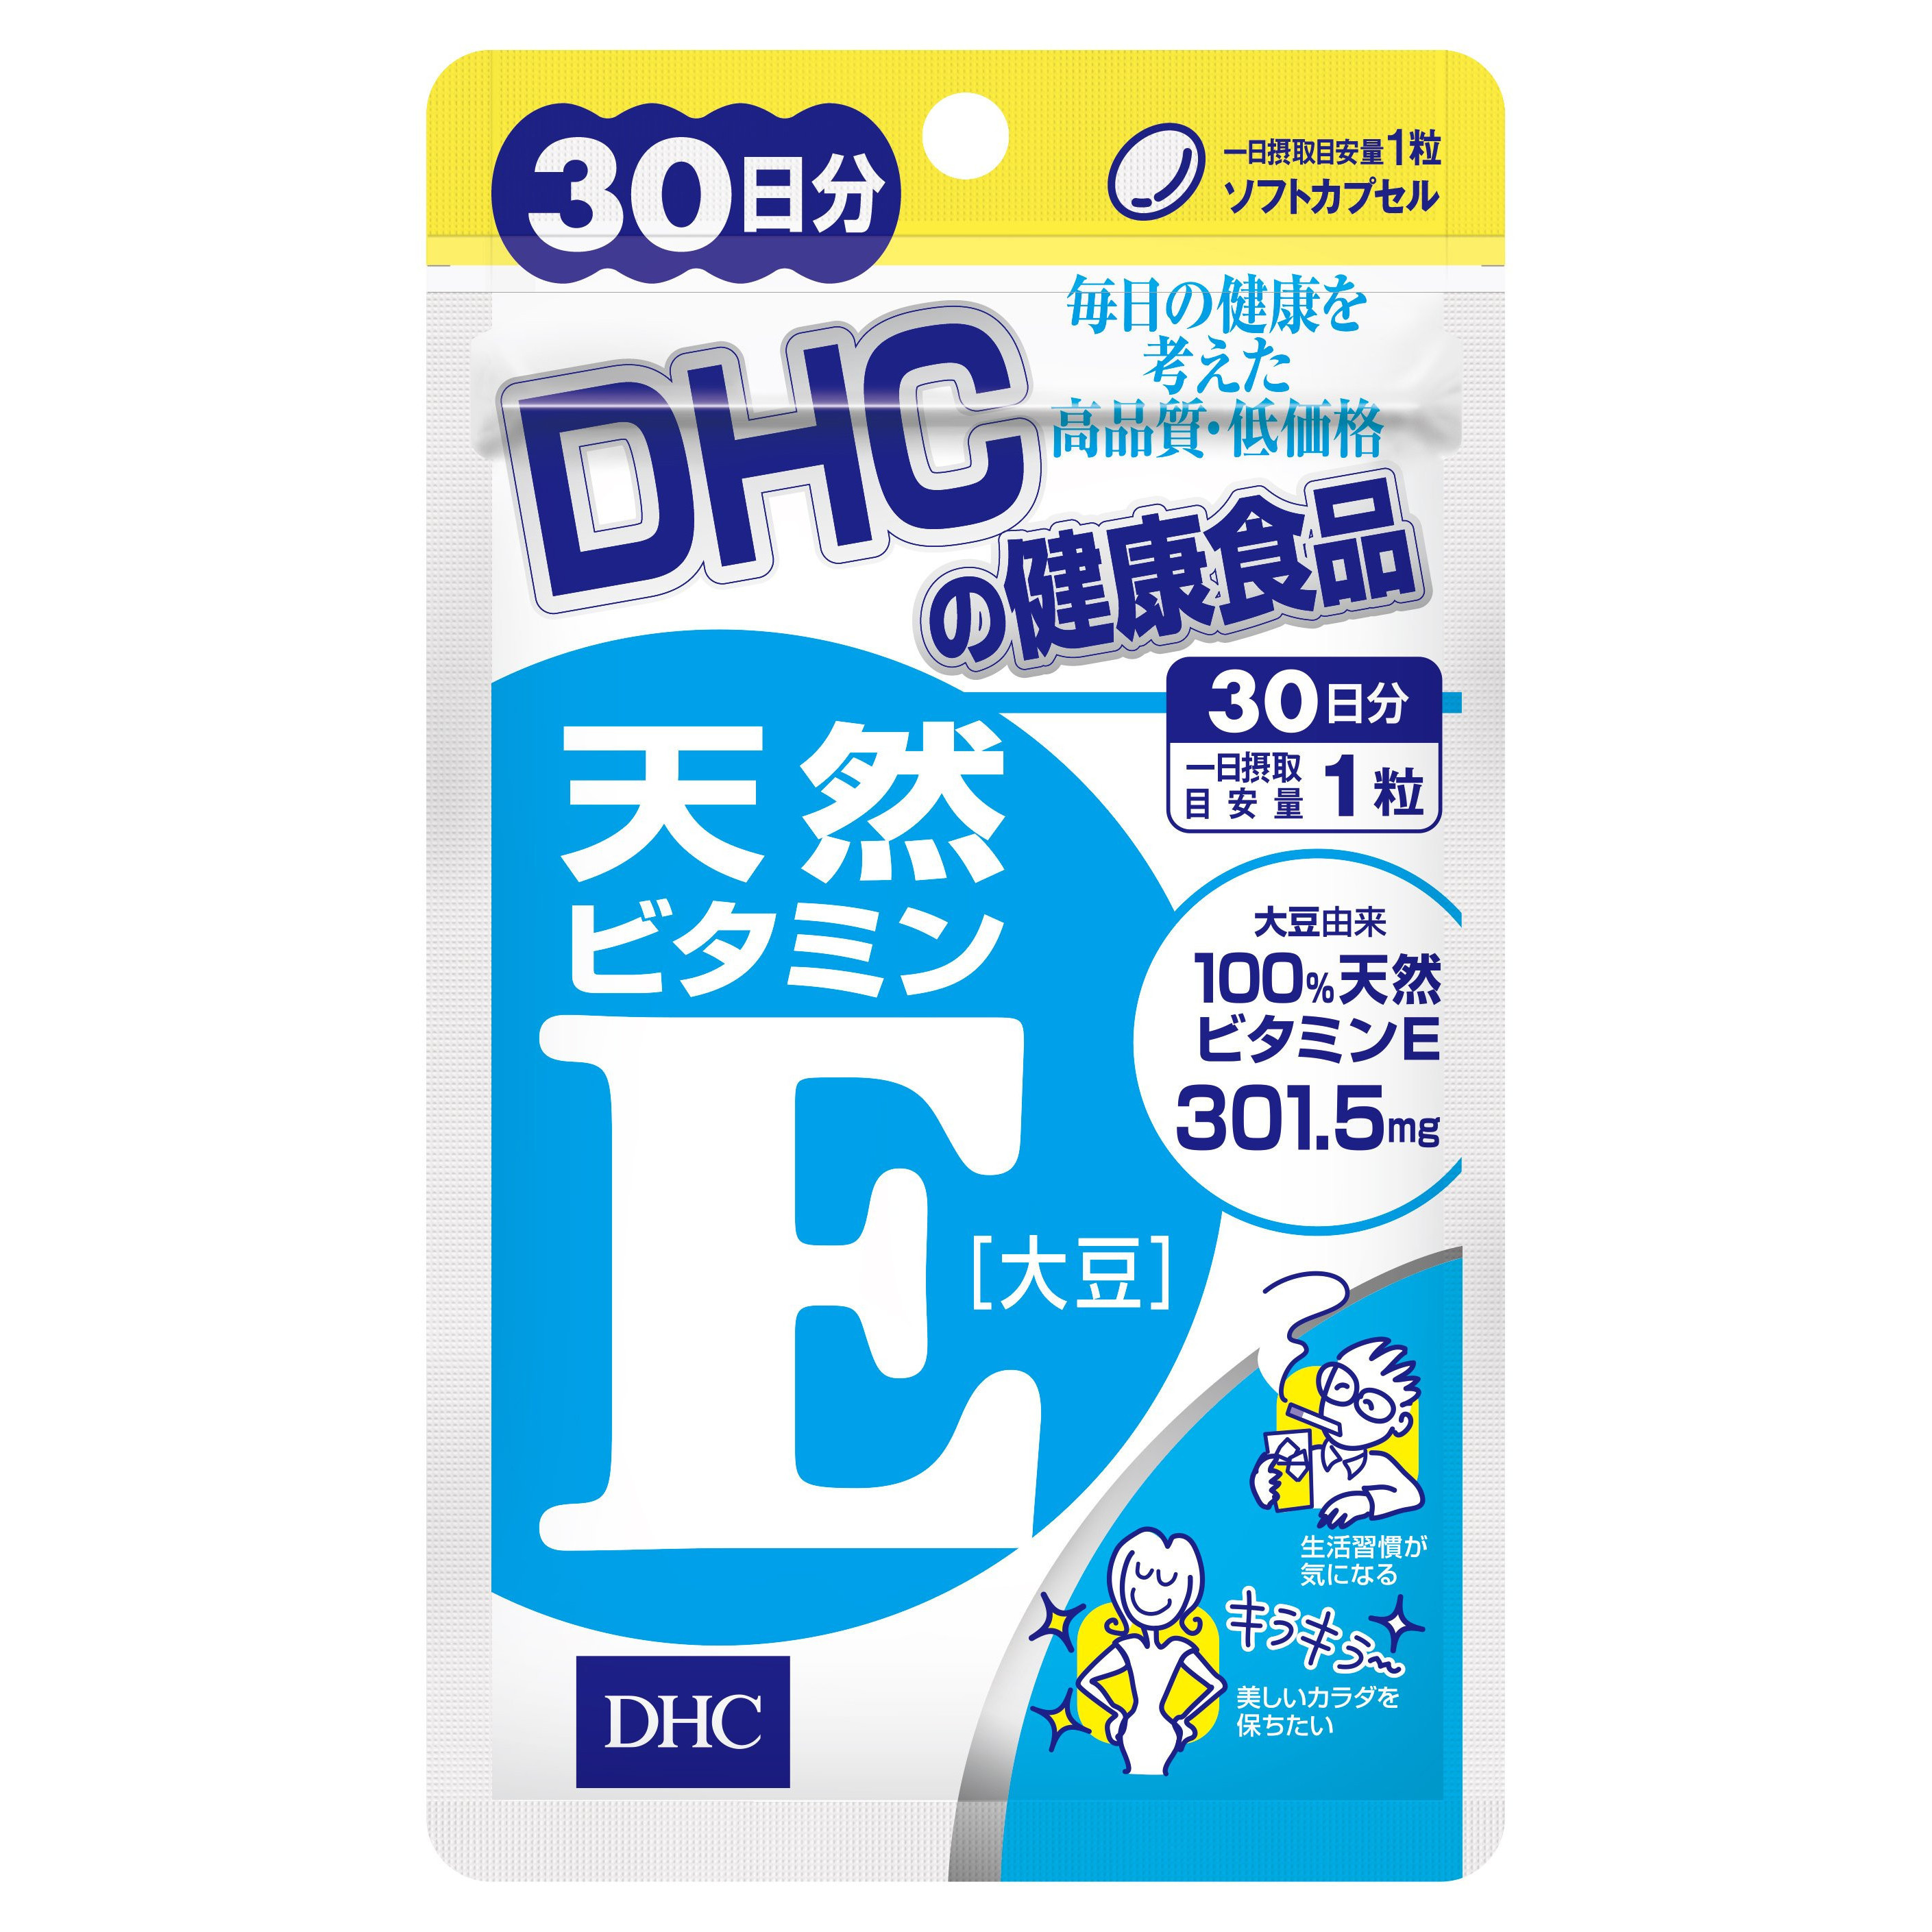 Viên uống DHC bổ sung Vitamin E (30 ngày)